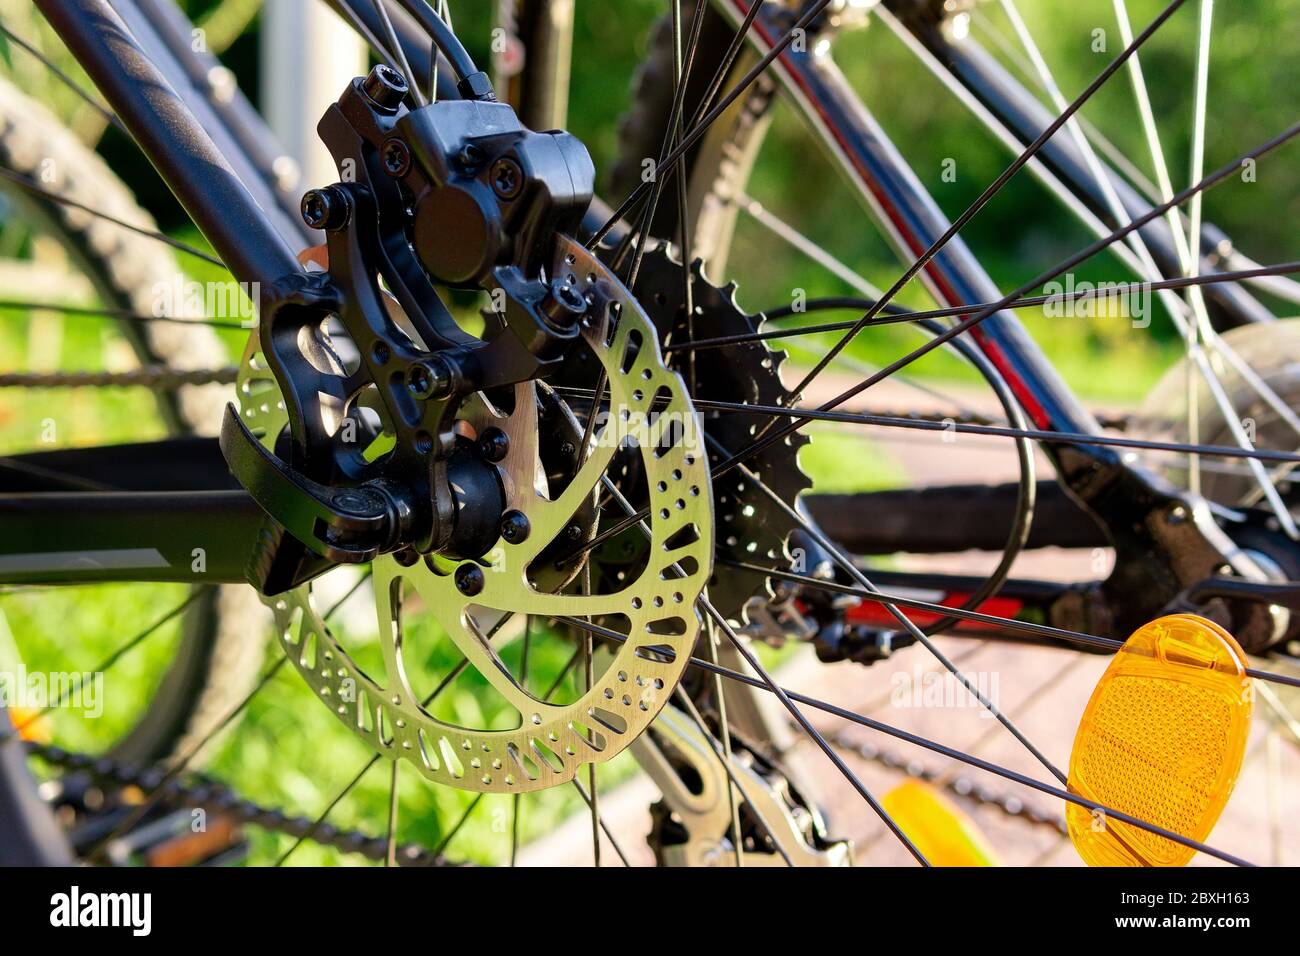 adjusting bicycle spokes